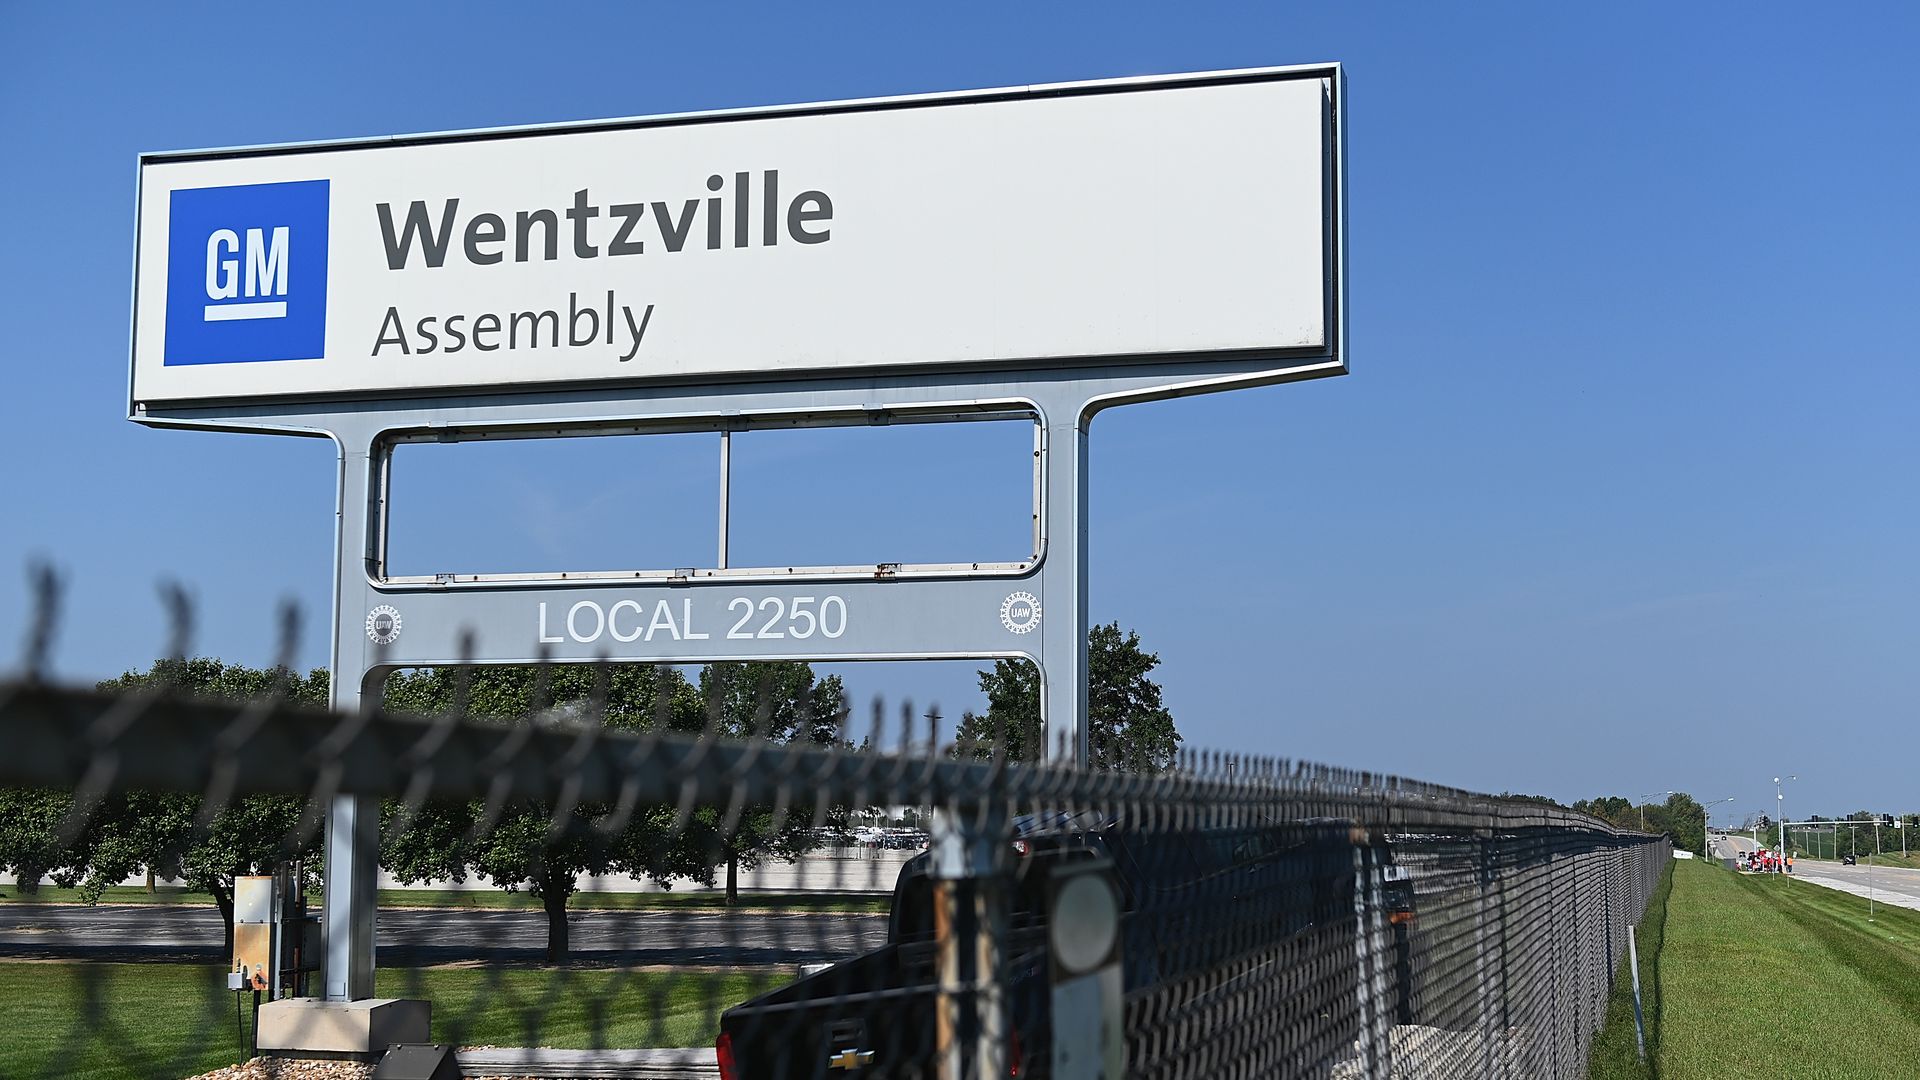 The General Motors Wenztville Assembly sign